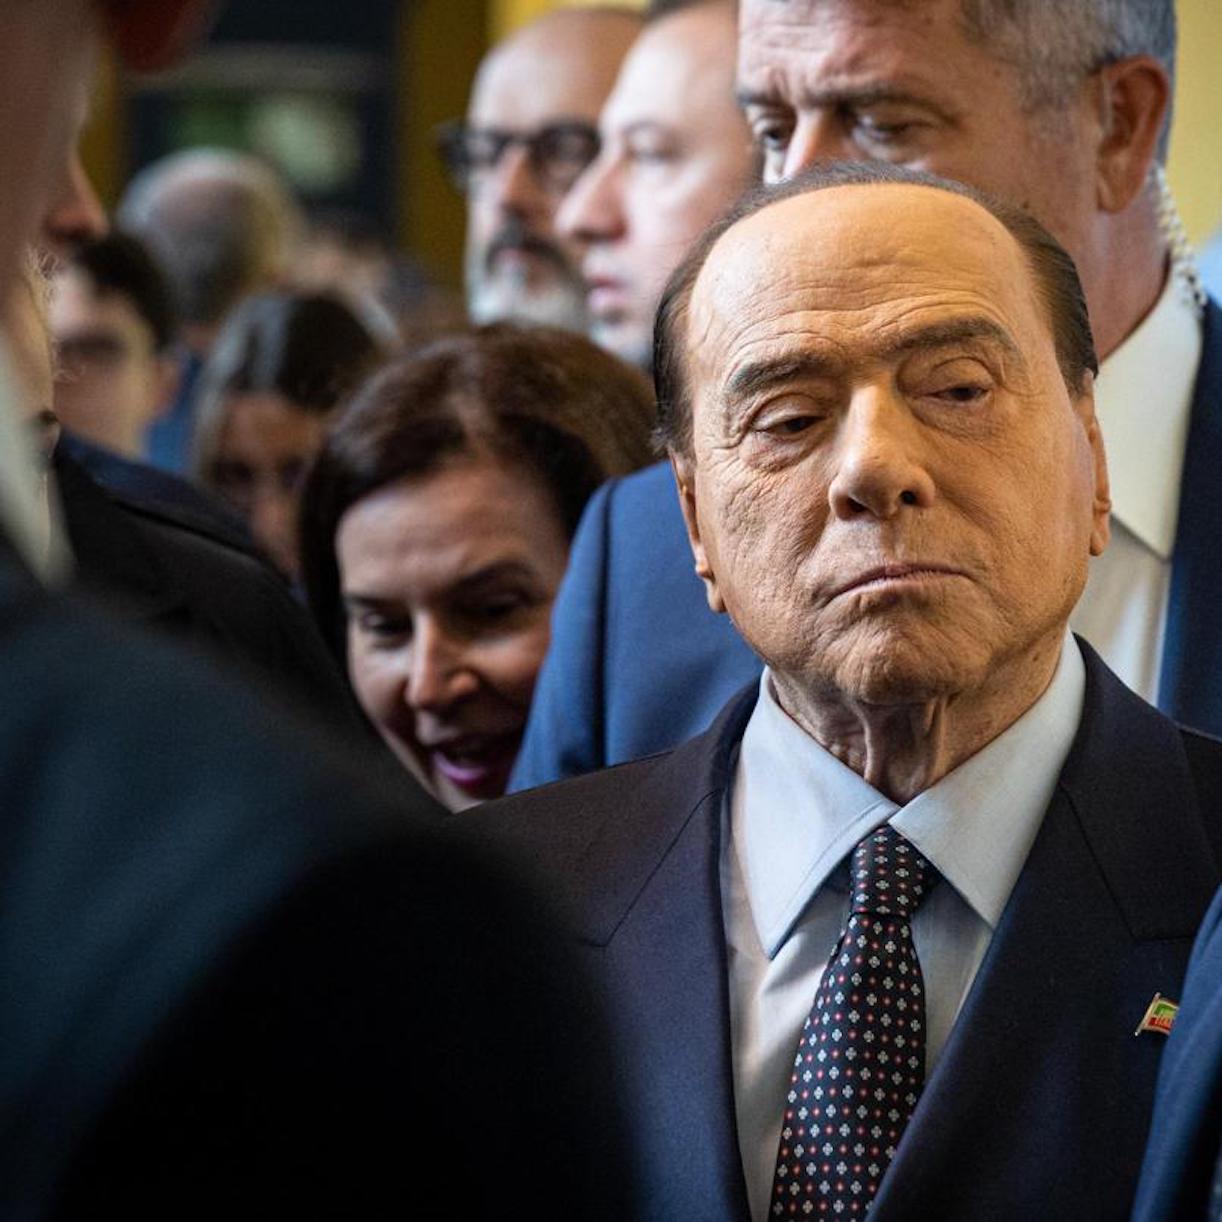 Notti con Berlusconi escort condannate falsa testimonianza 